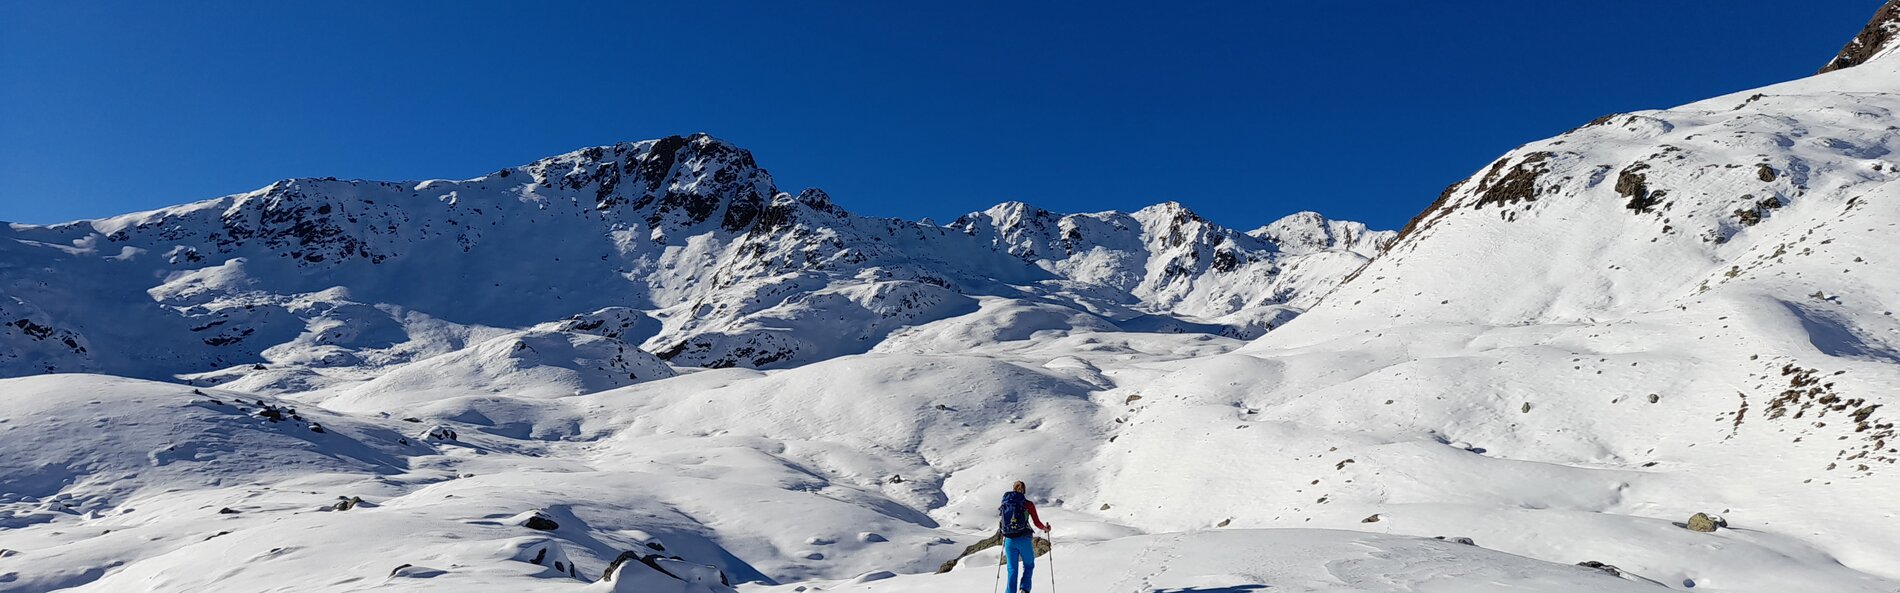 Skitourengeher beim Betreten eines unberührten Hochplateaus © Nationalpark Hohe Tauern; Grimm